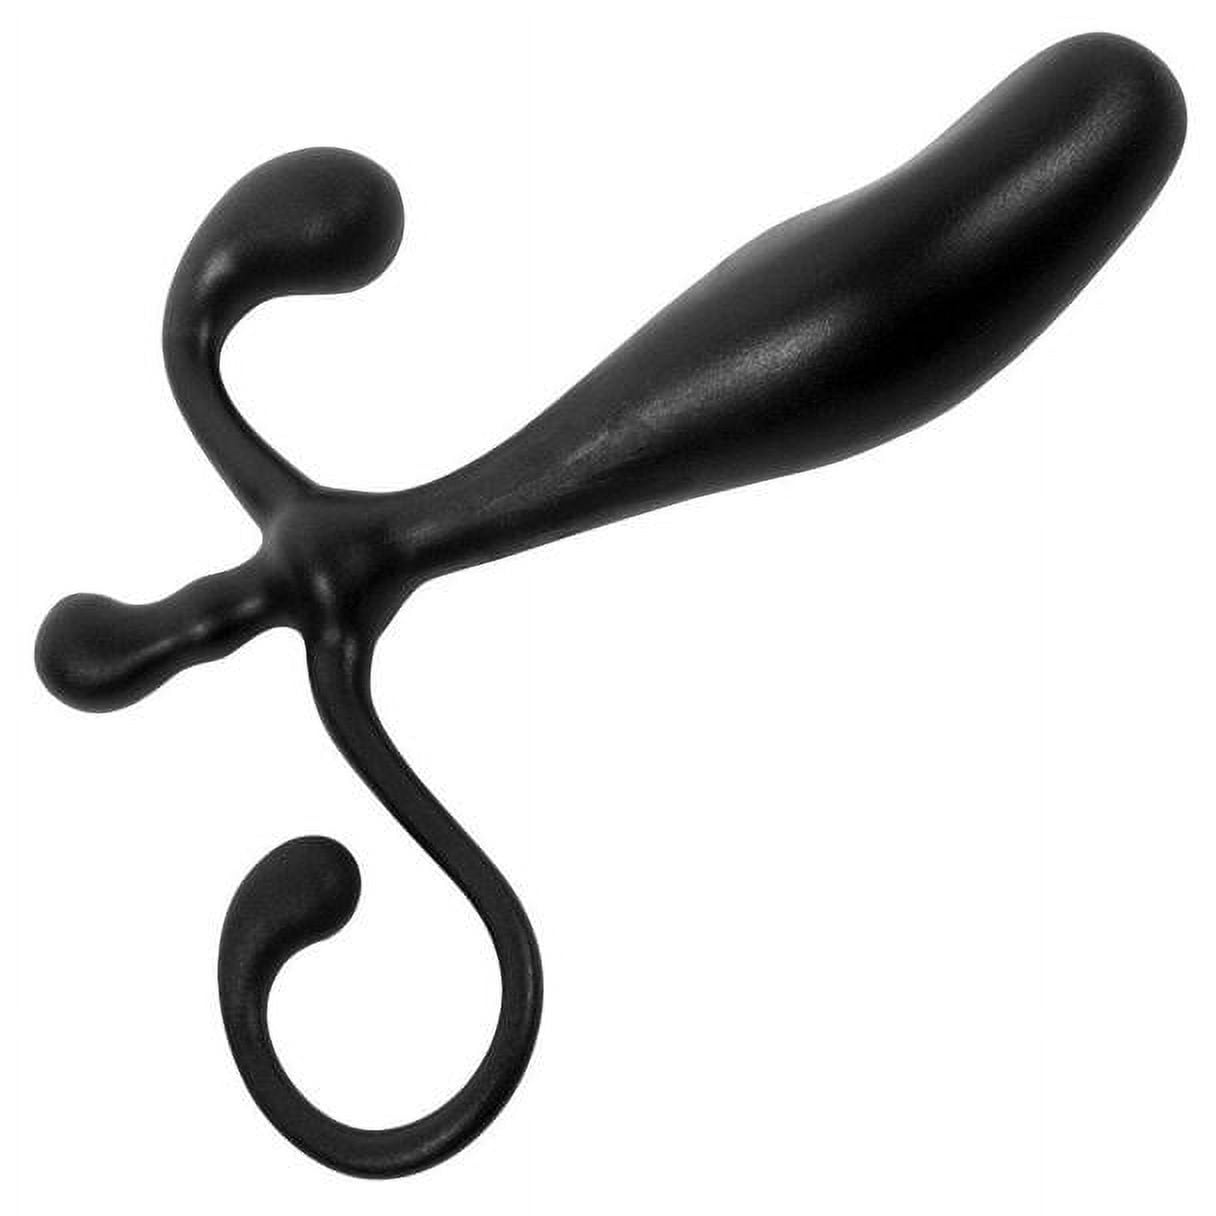 Black Curved Prostate Massager - Walmart.com